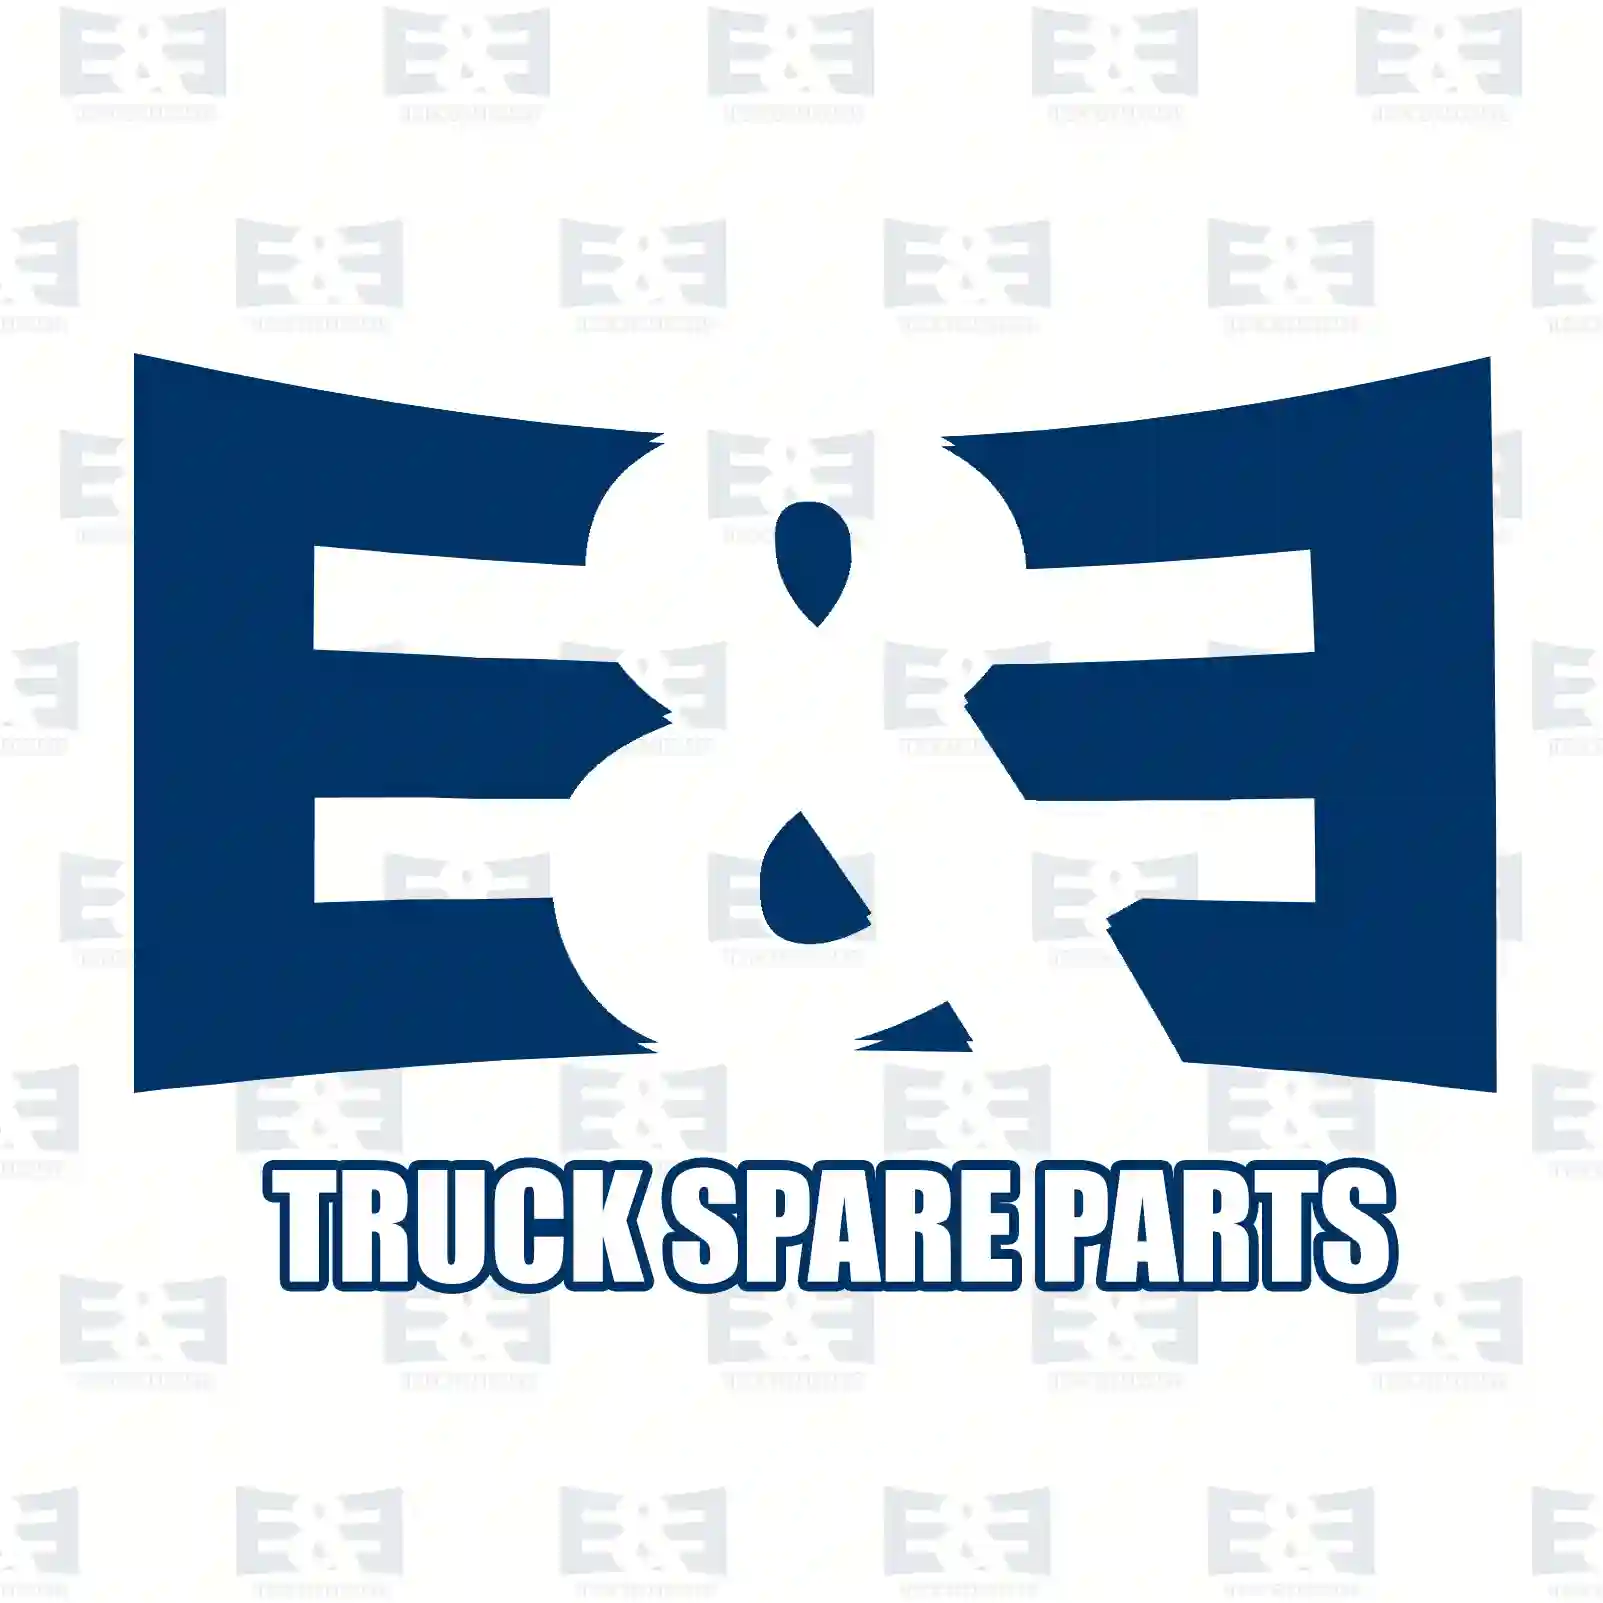 Brake disc, 2E2293992, 02996049, 07186848, 2996049, 7186848, , , , , ||  2E2293992 E&E Truck Spare Parts | Truck Spare Parts, Auotomotive Spare Parts Brake disc, 2E2293992, 02996049, 07186848, 2996049, 7186848, , , , , ||  2E2293992 E&E Truck Spare Parts | Truck Spare Parts, Auotomotive Spare Parts